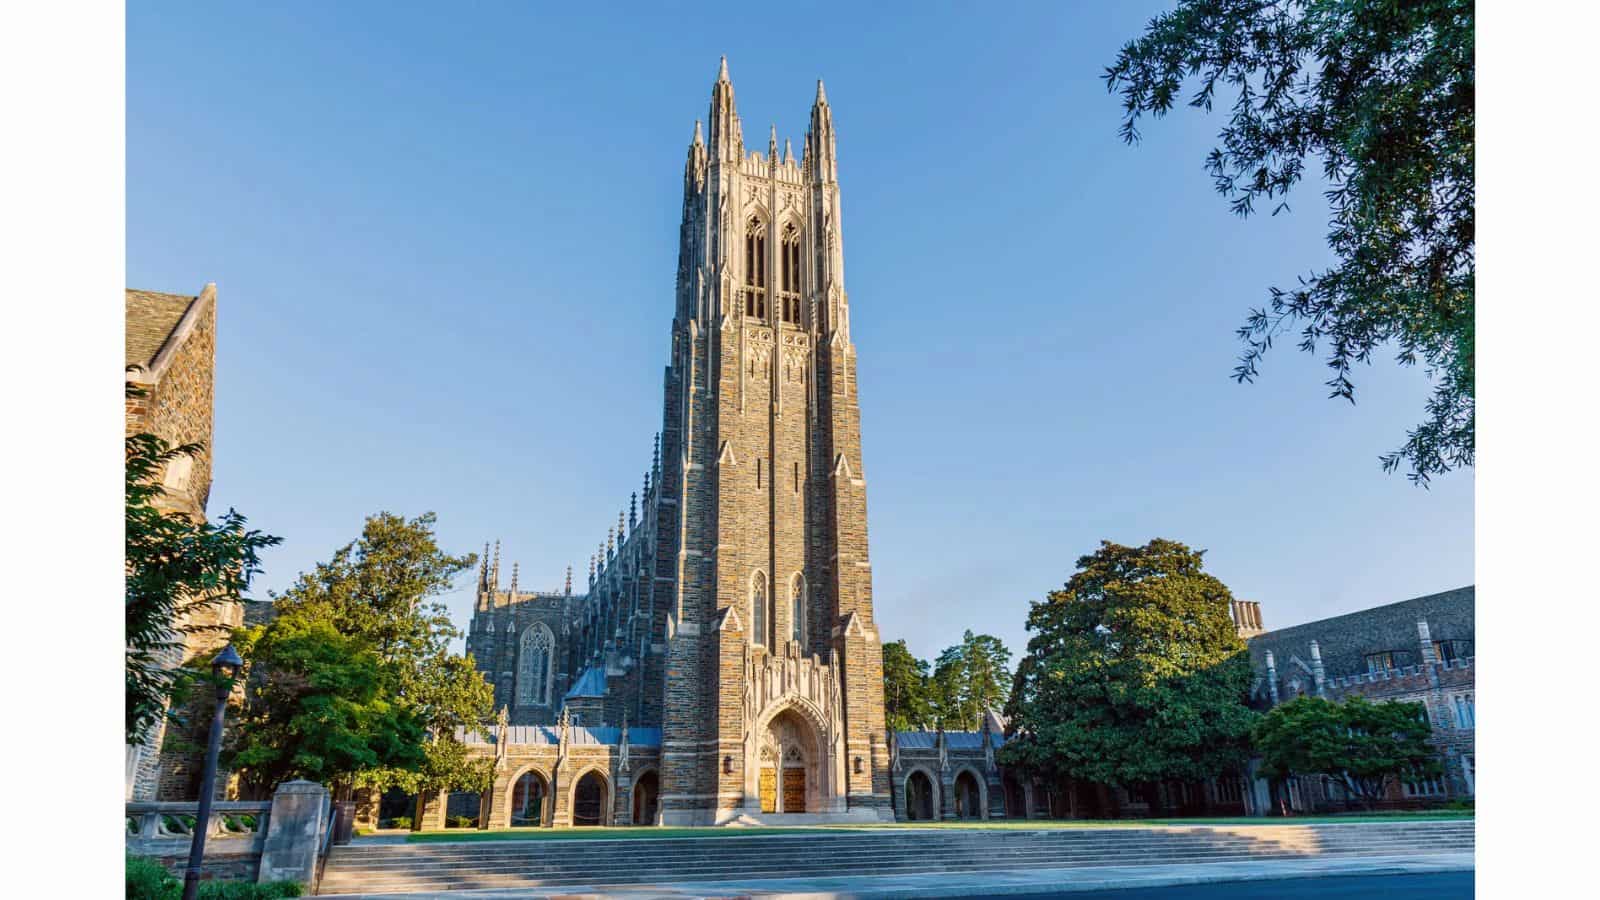 Where is Duke University